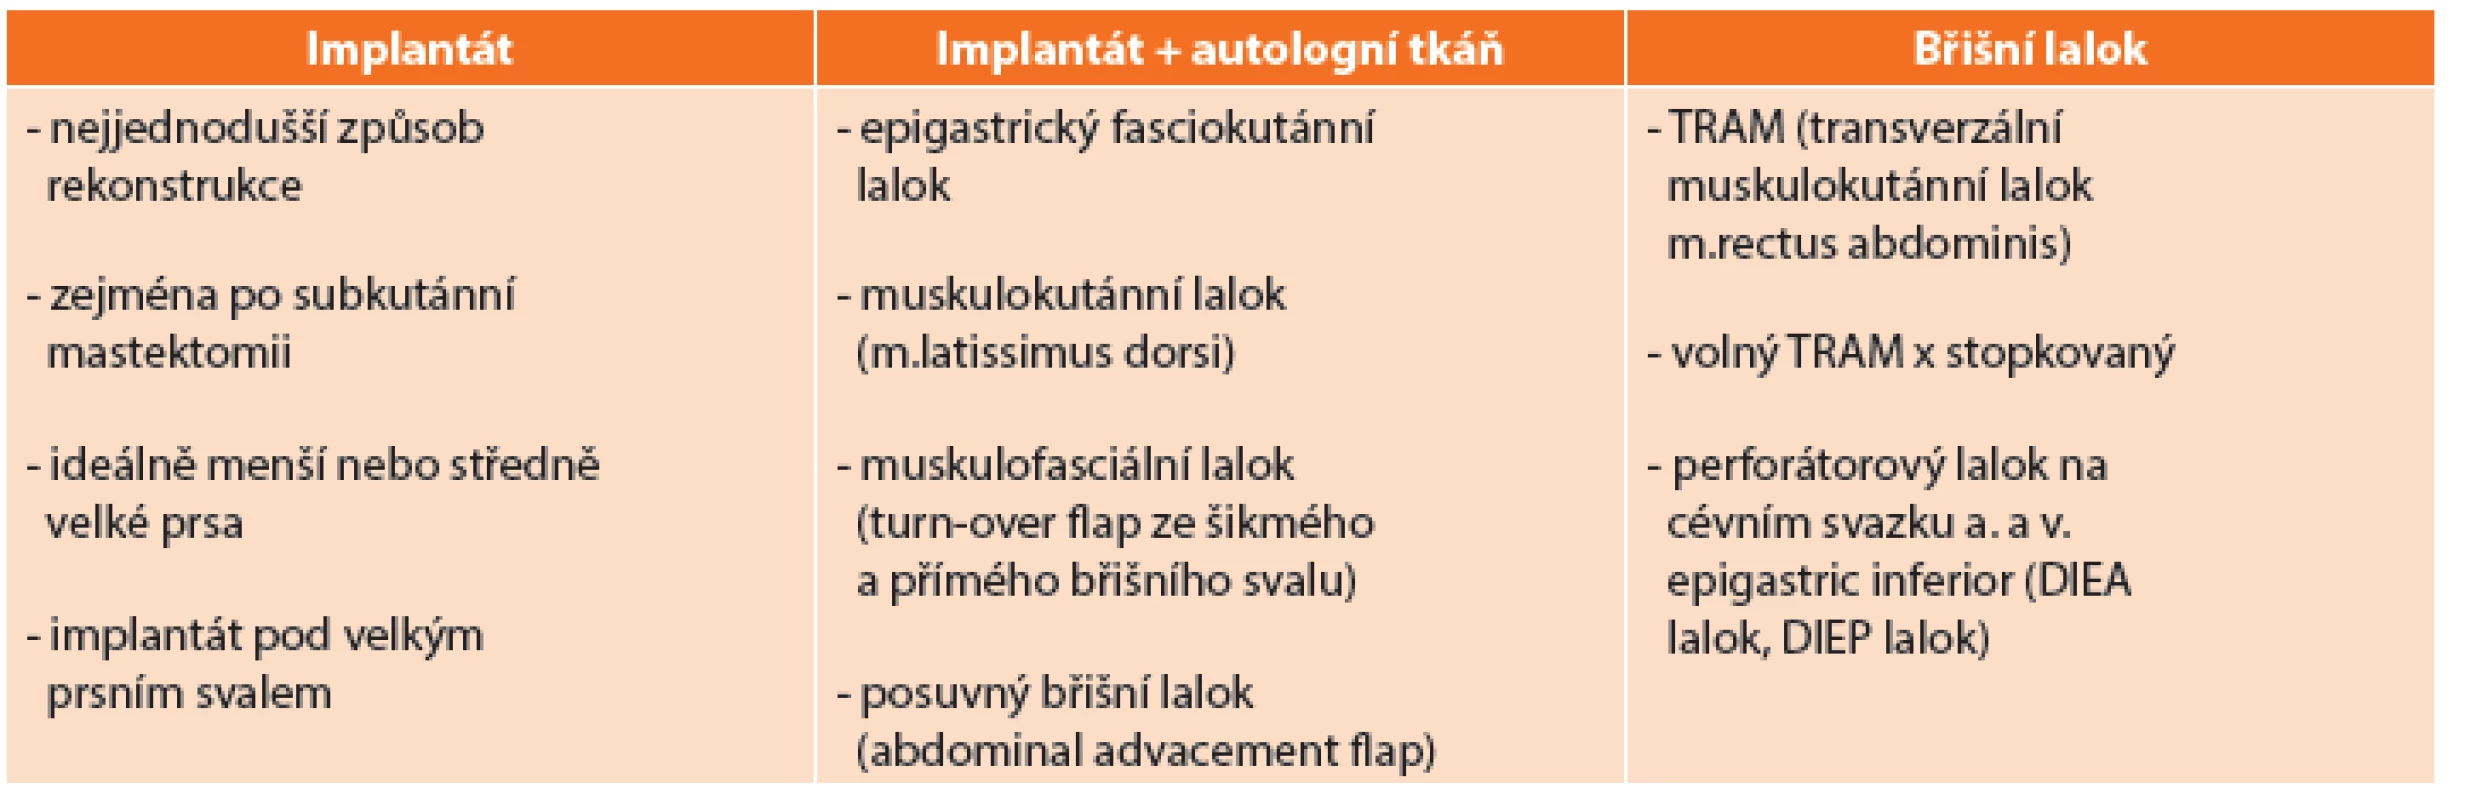 Typy rekonstrukce prsů po mastektomii
Tab. 2: Types of breast reconstruction after mastectomy